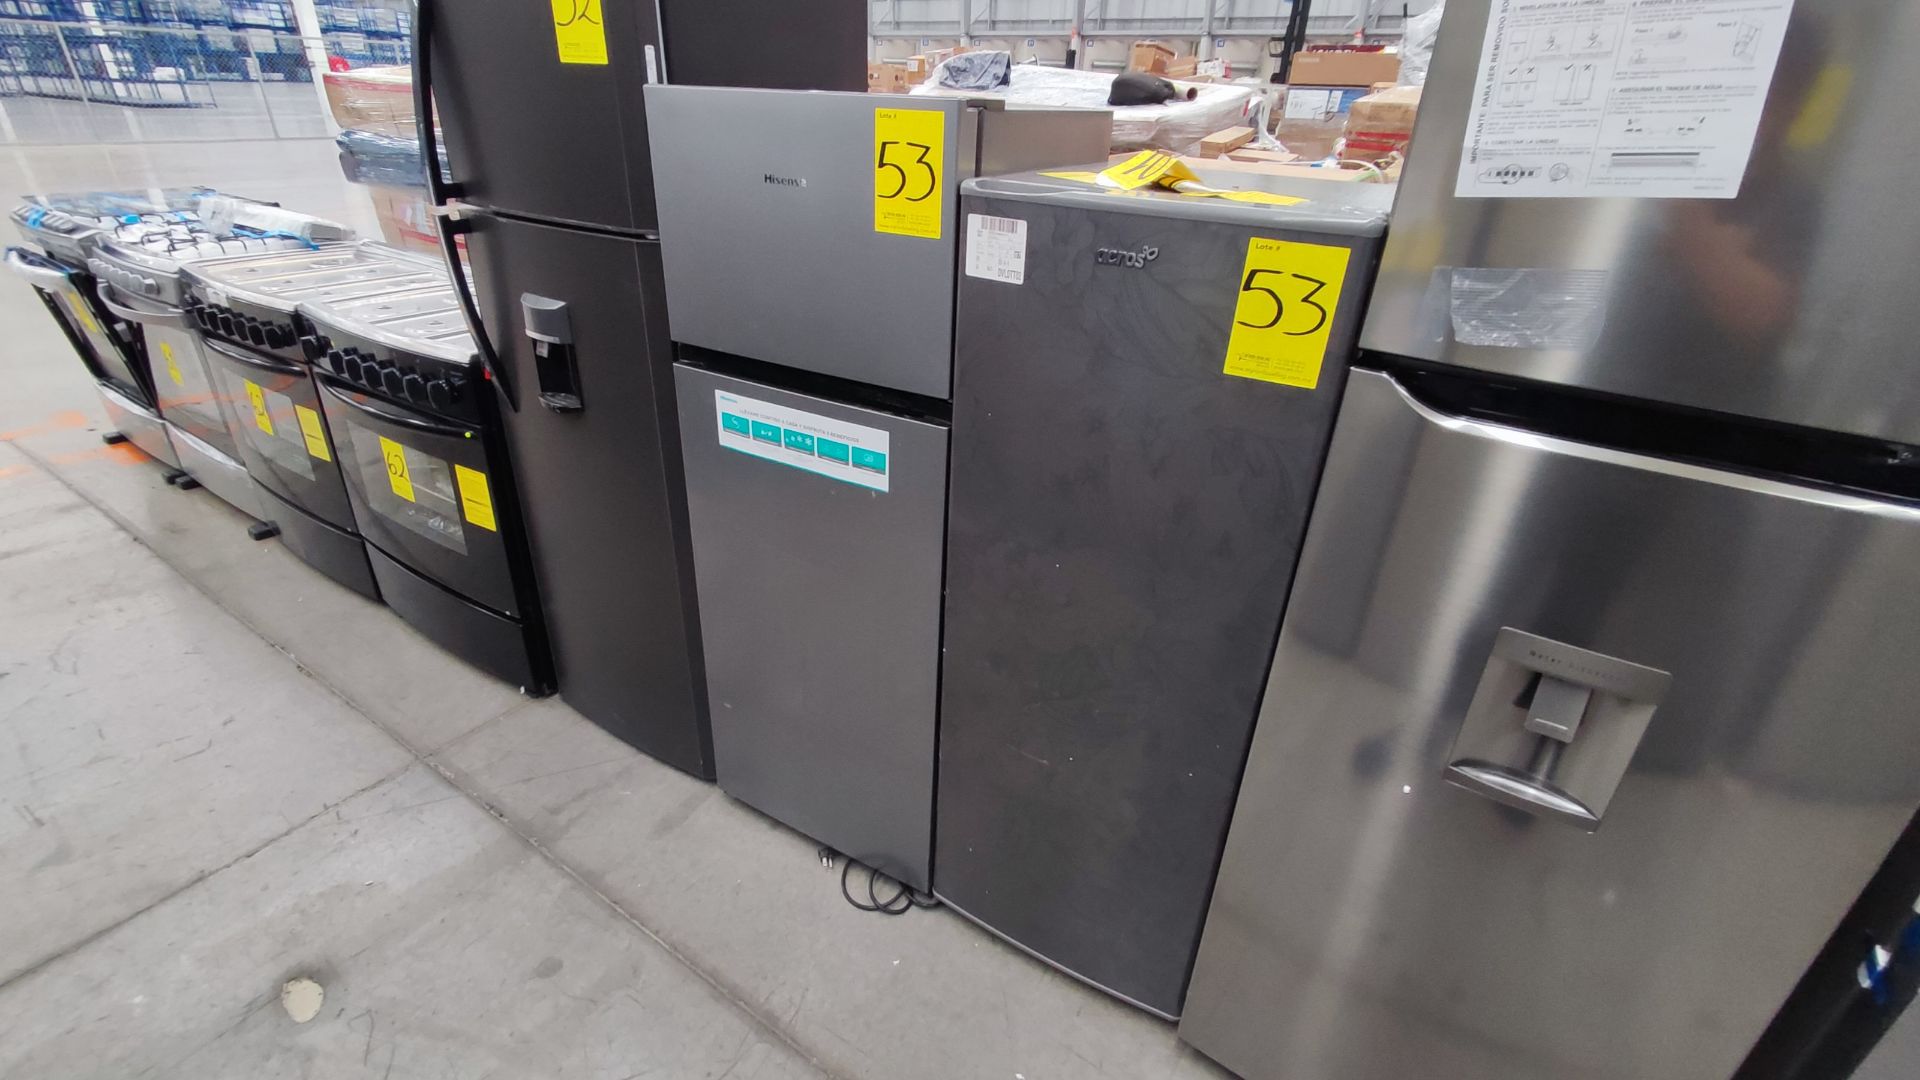 Lote de 2 Refrigeradores, Contiene; 1 Refrigerador Marca Hisense, Modelo BCYNY, Serie 1B0205Z0080JB - Image 2 of 11